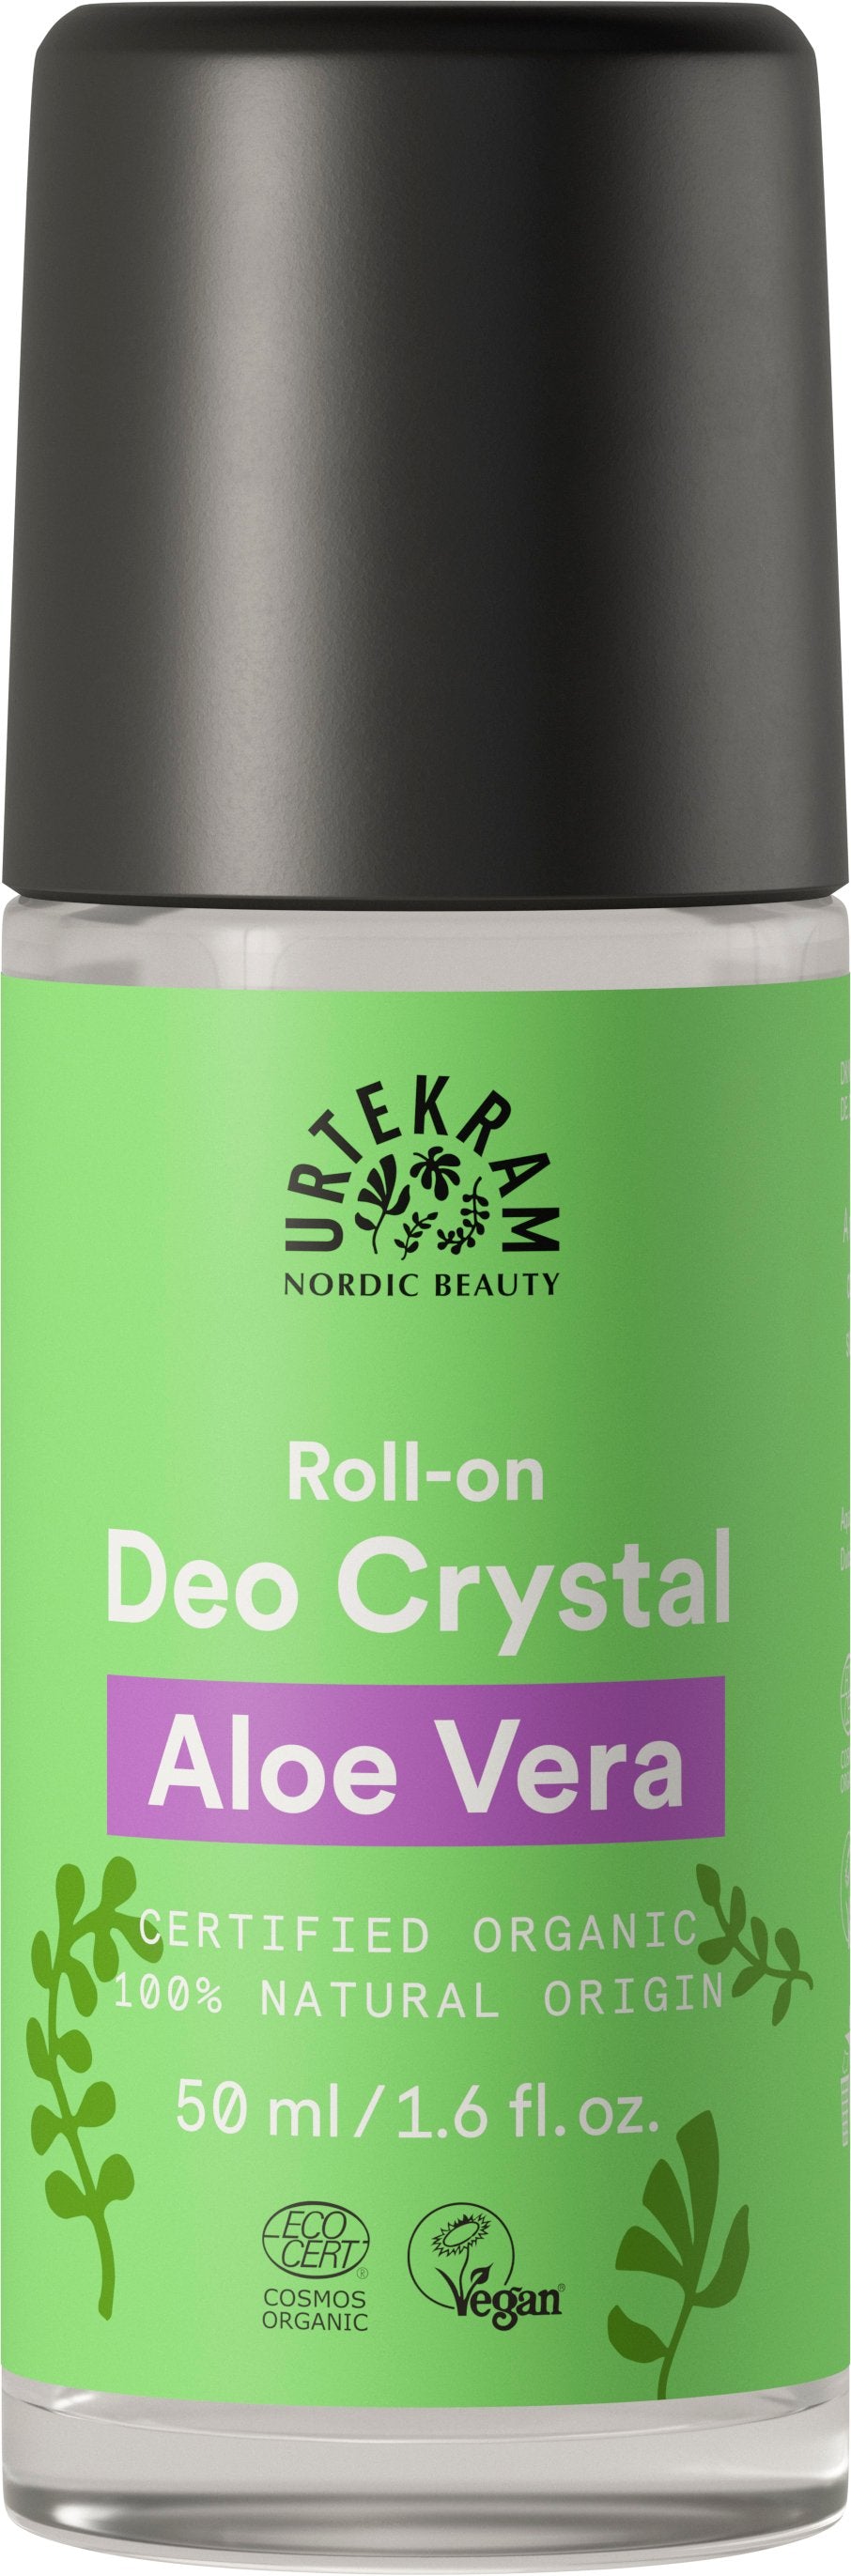 Urtekram Roll-on Deo Crystal Aloe Vera 50 ml - Päiväys 09/2022 - poistuu